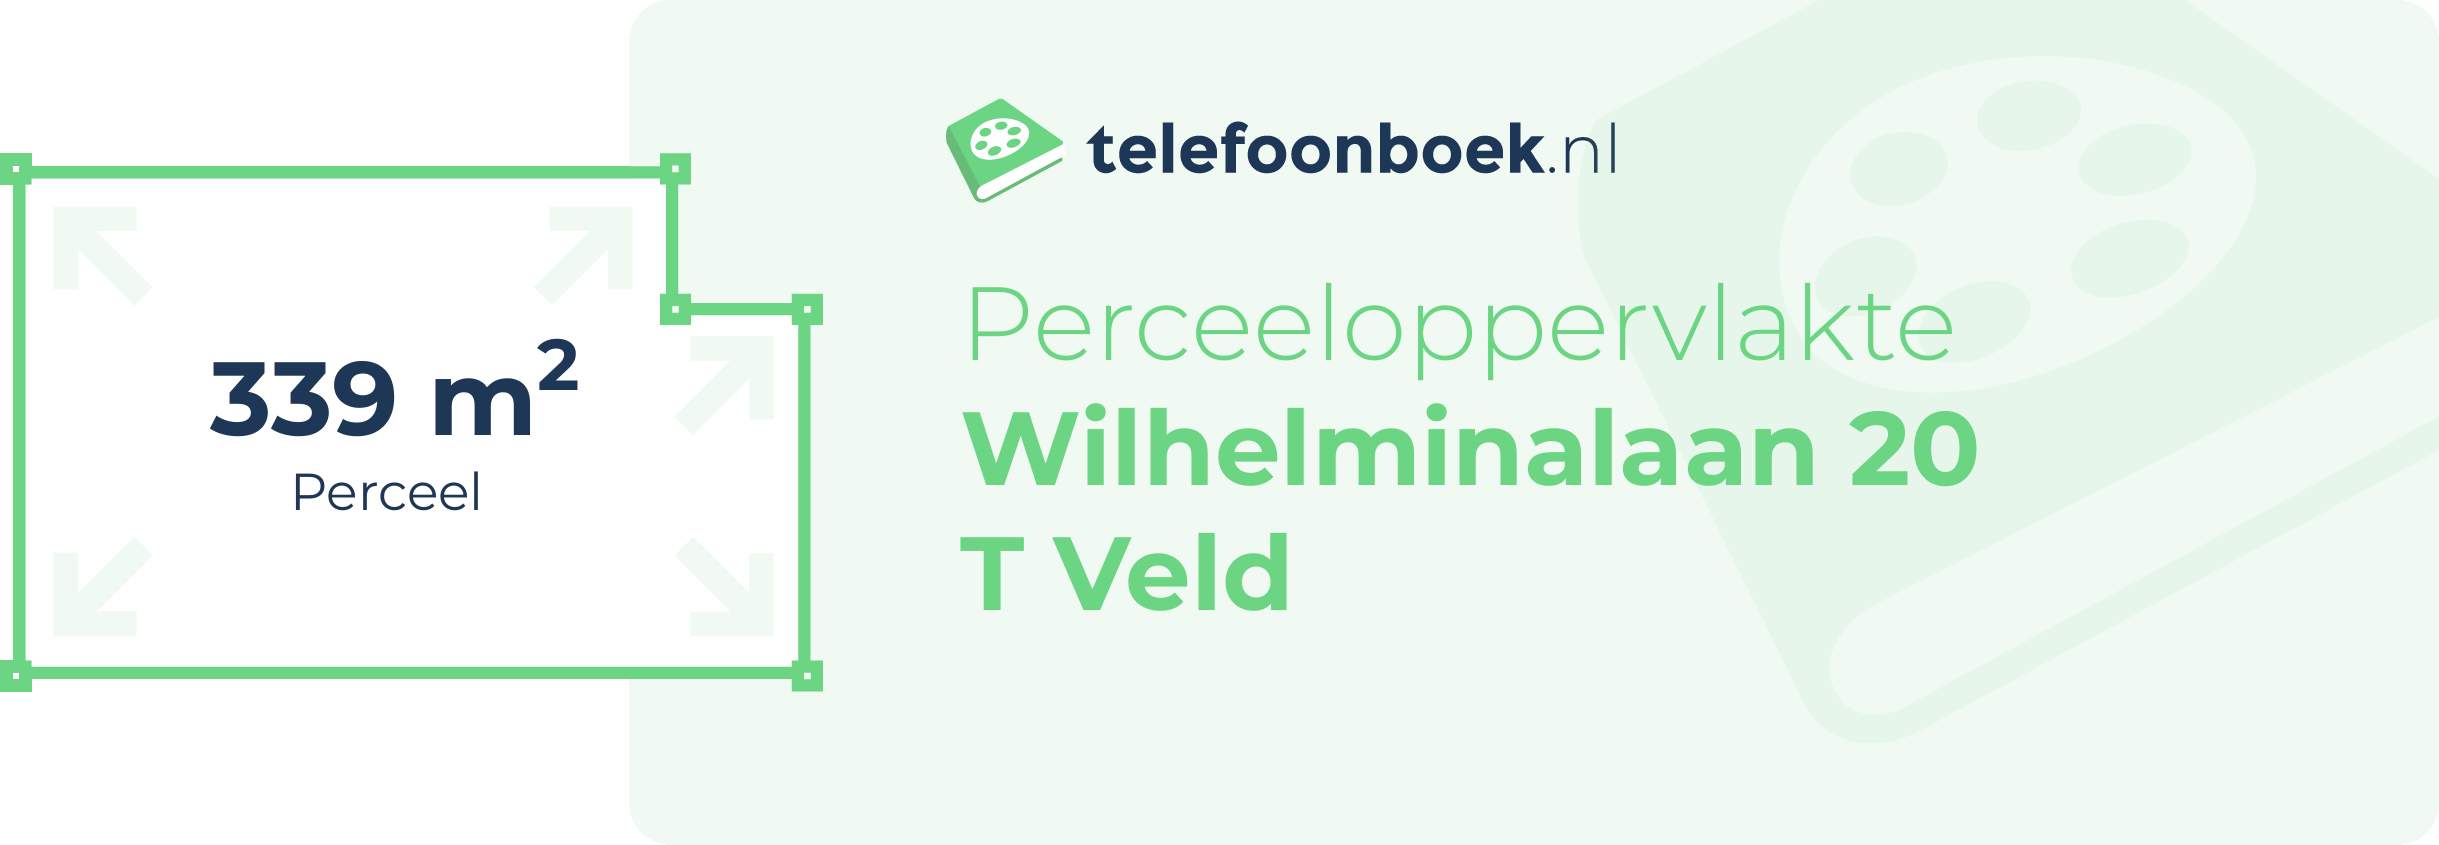 Perceeloppervlakte Wilhelminalaan 20 T Veld